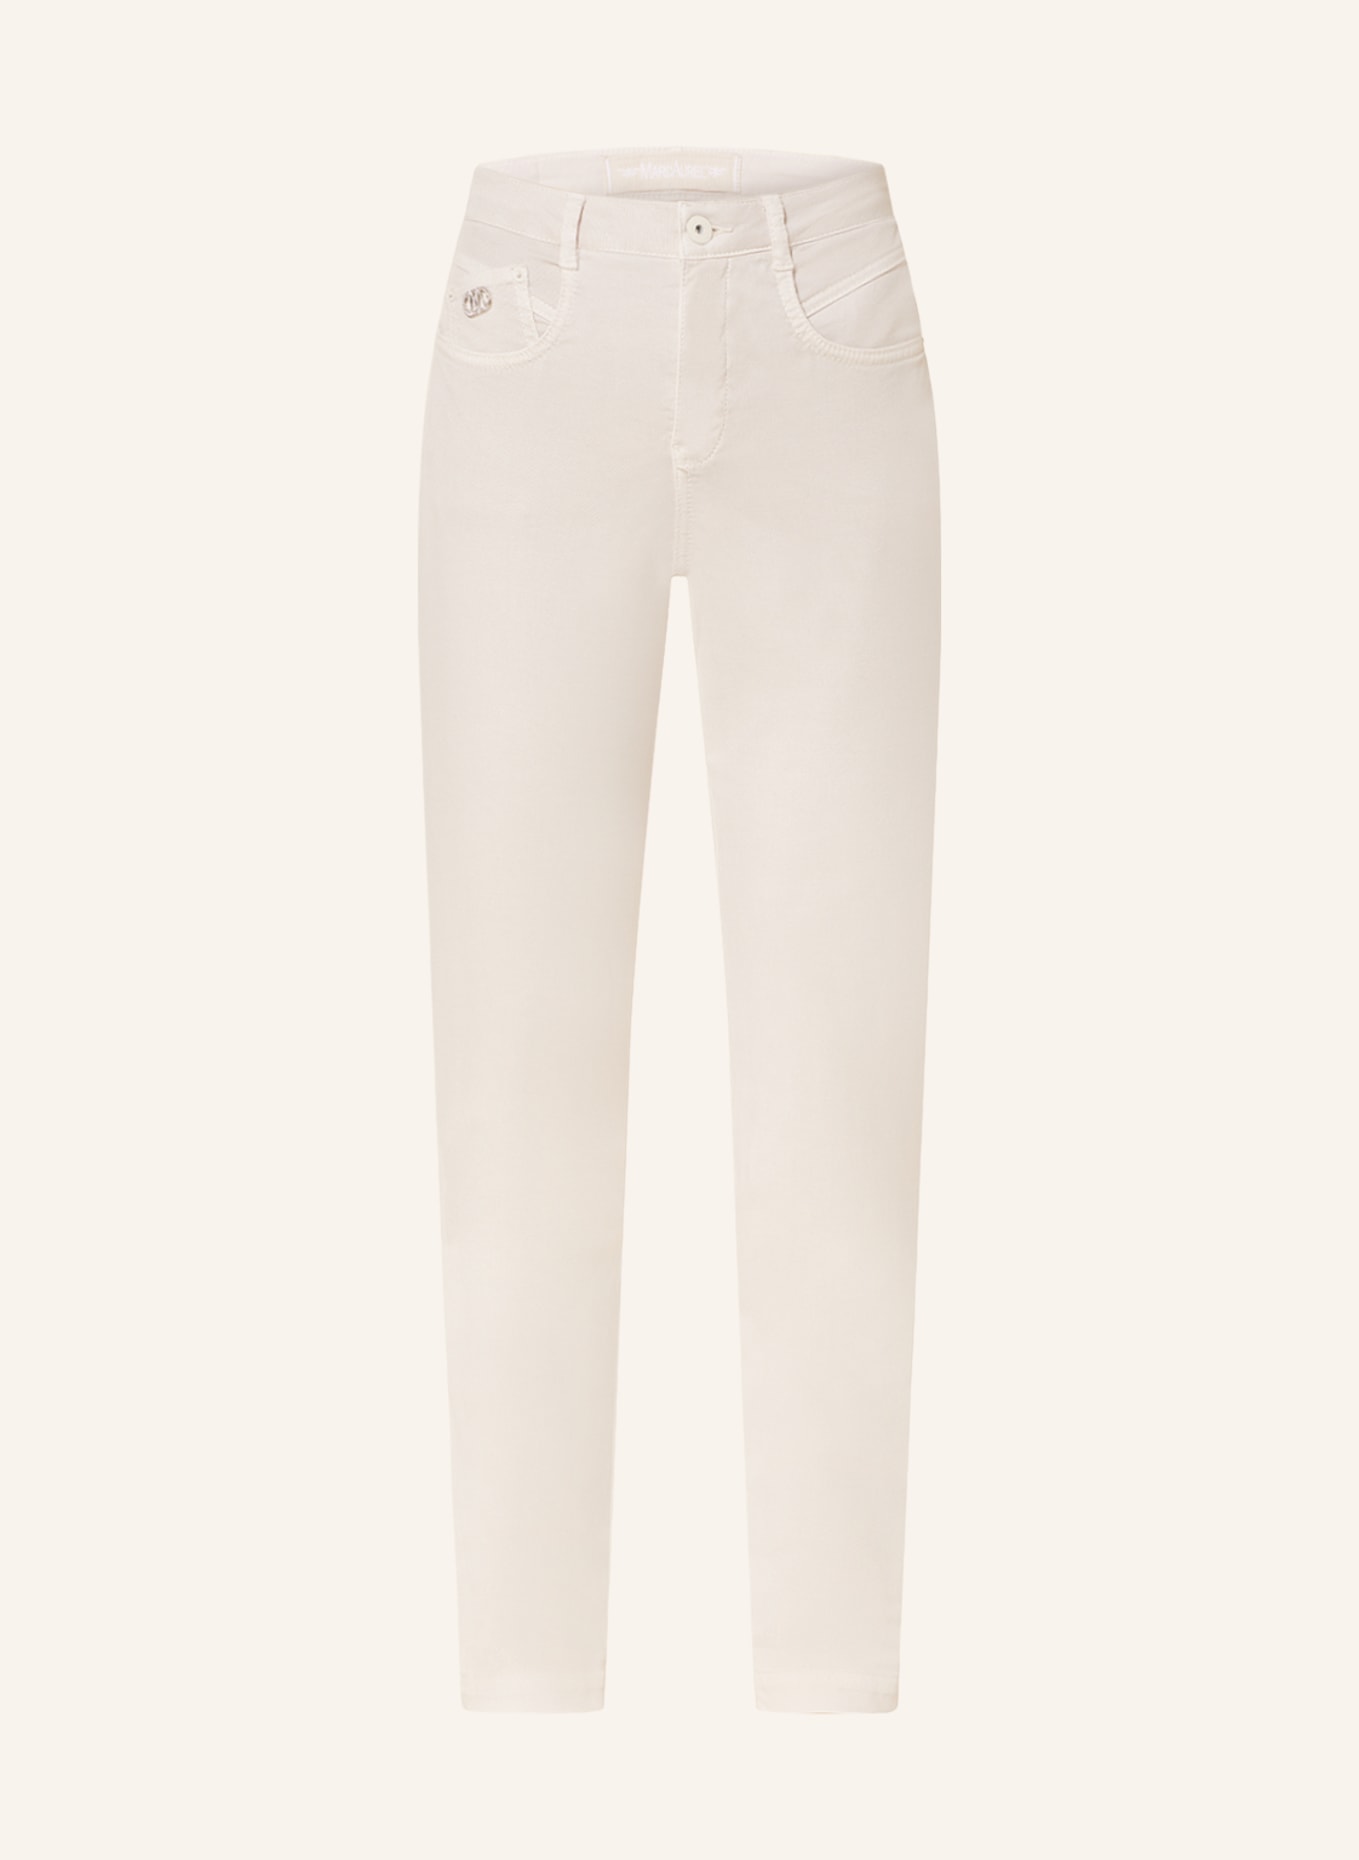 MARC AUREL Jeans, Farbe: BEIGE (Bild 1)